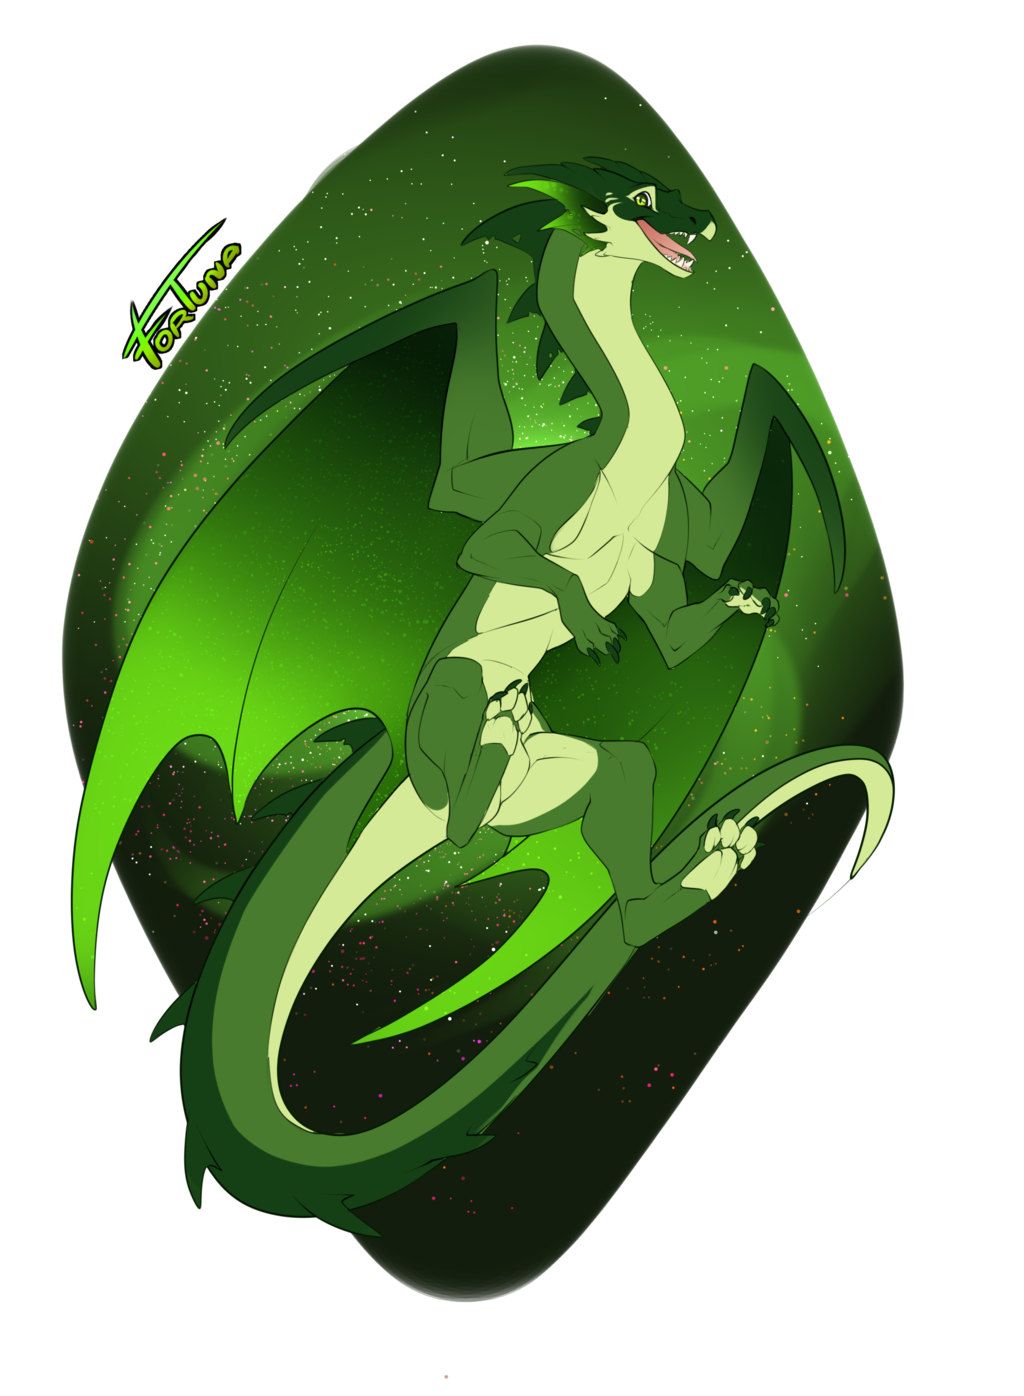 [GiftArt] Bozar the Dragon